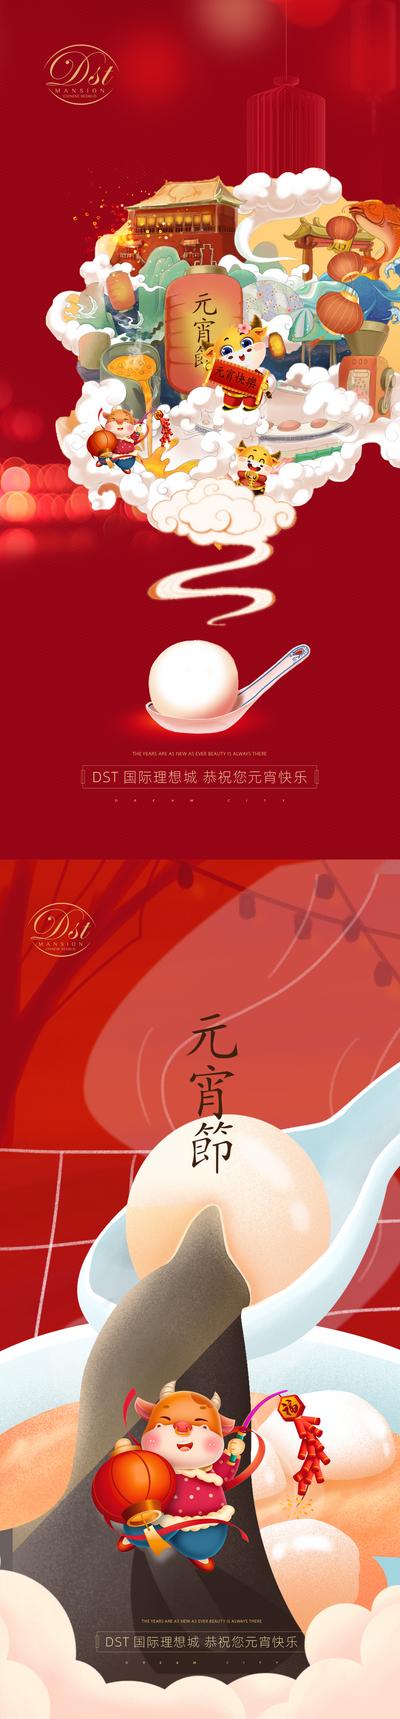 南门网 海报 房地产 元宵节 插画 系列 中国传统节日